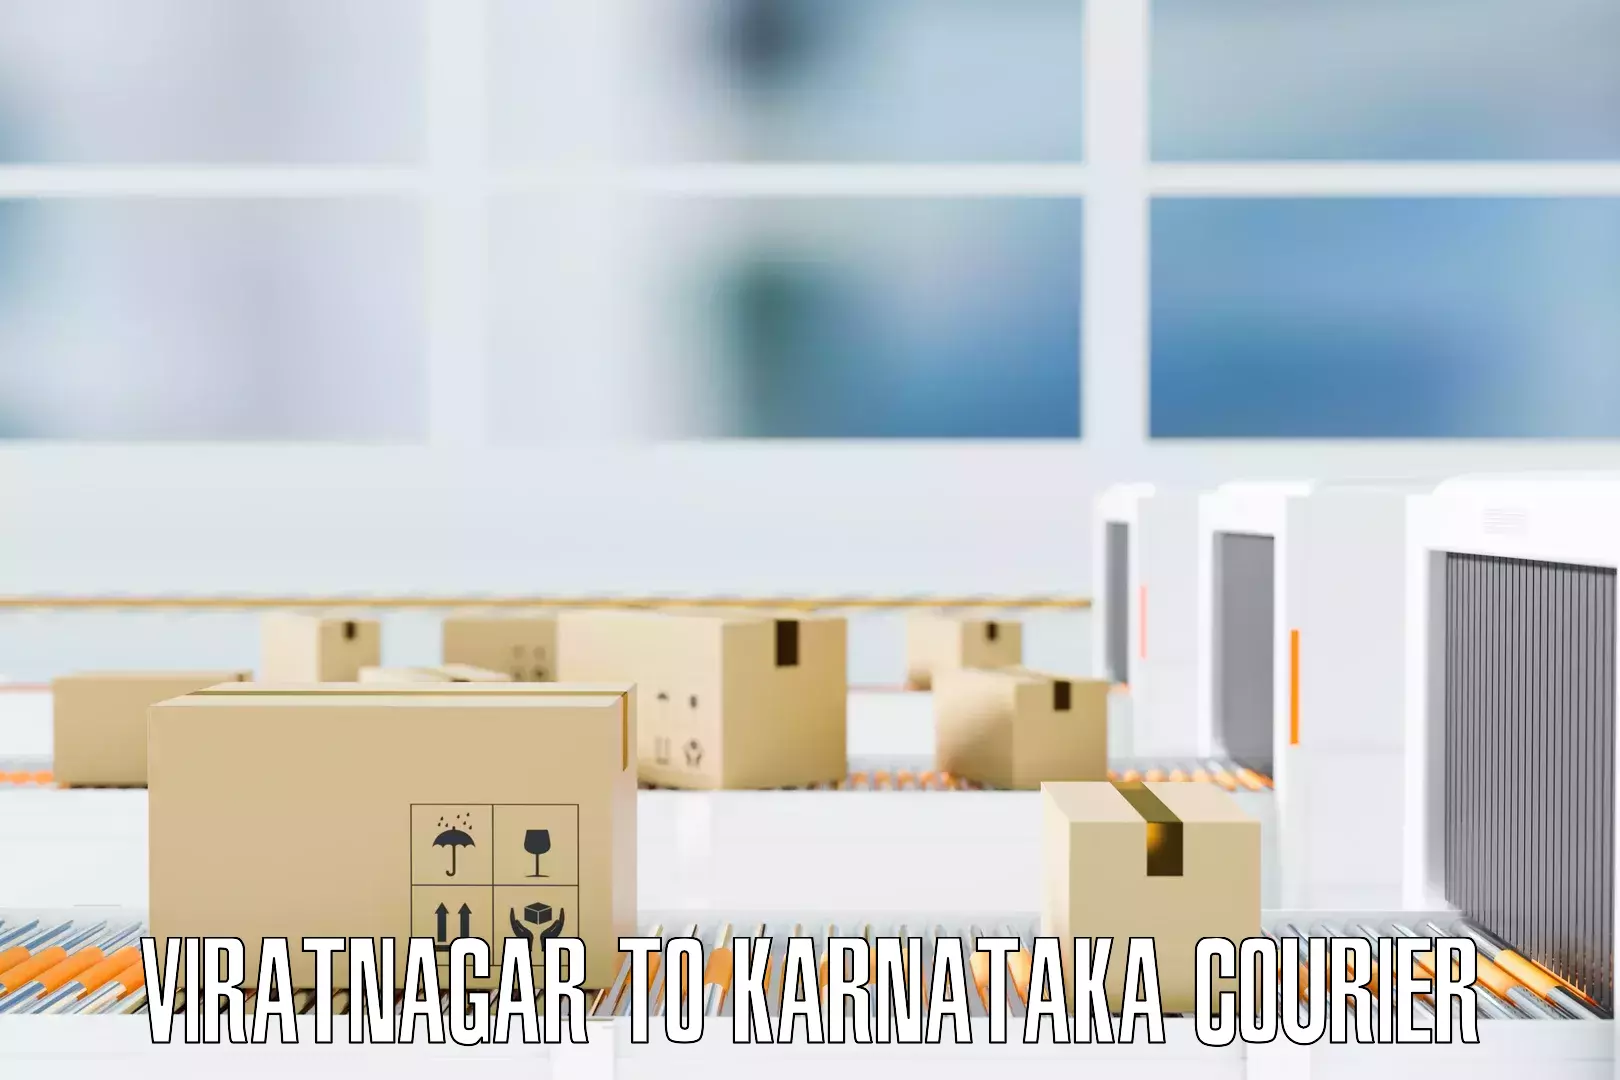 Reliable furniture transport Viratnagar to Karnataka